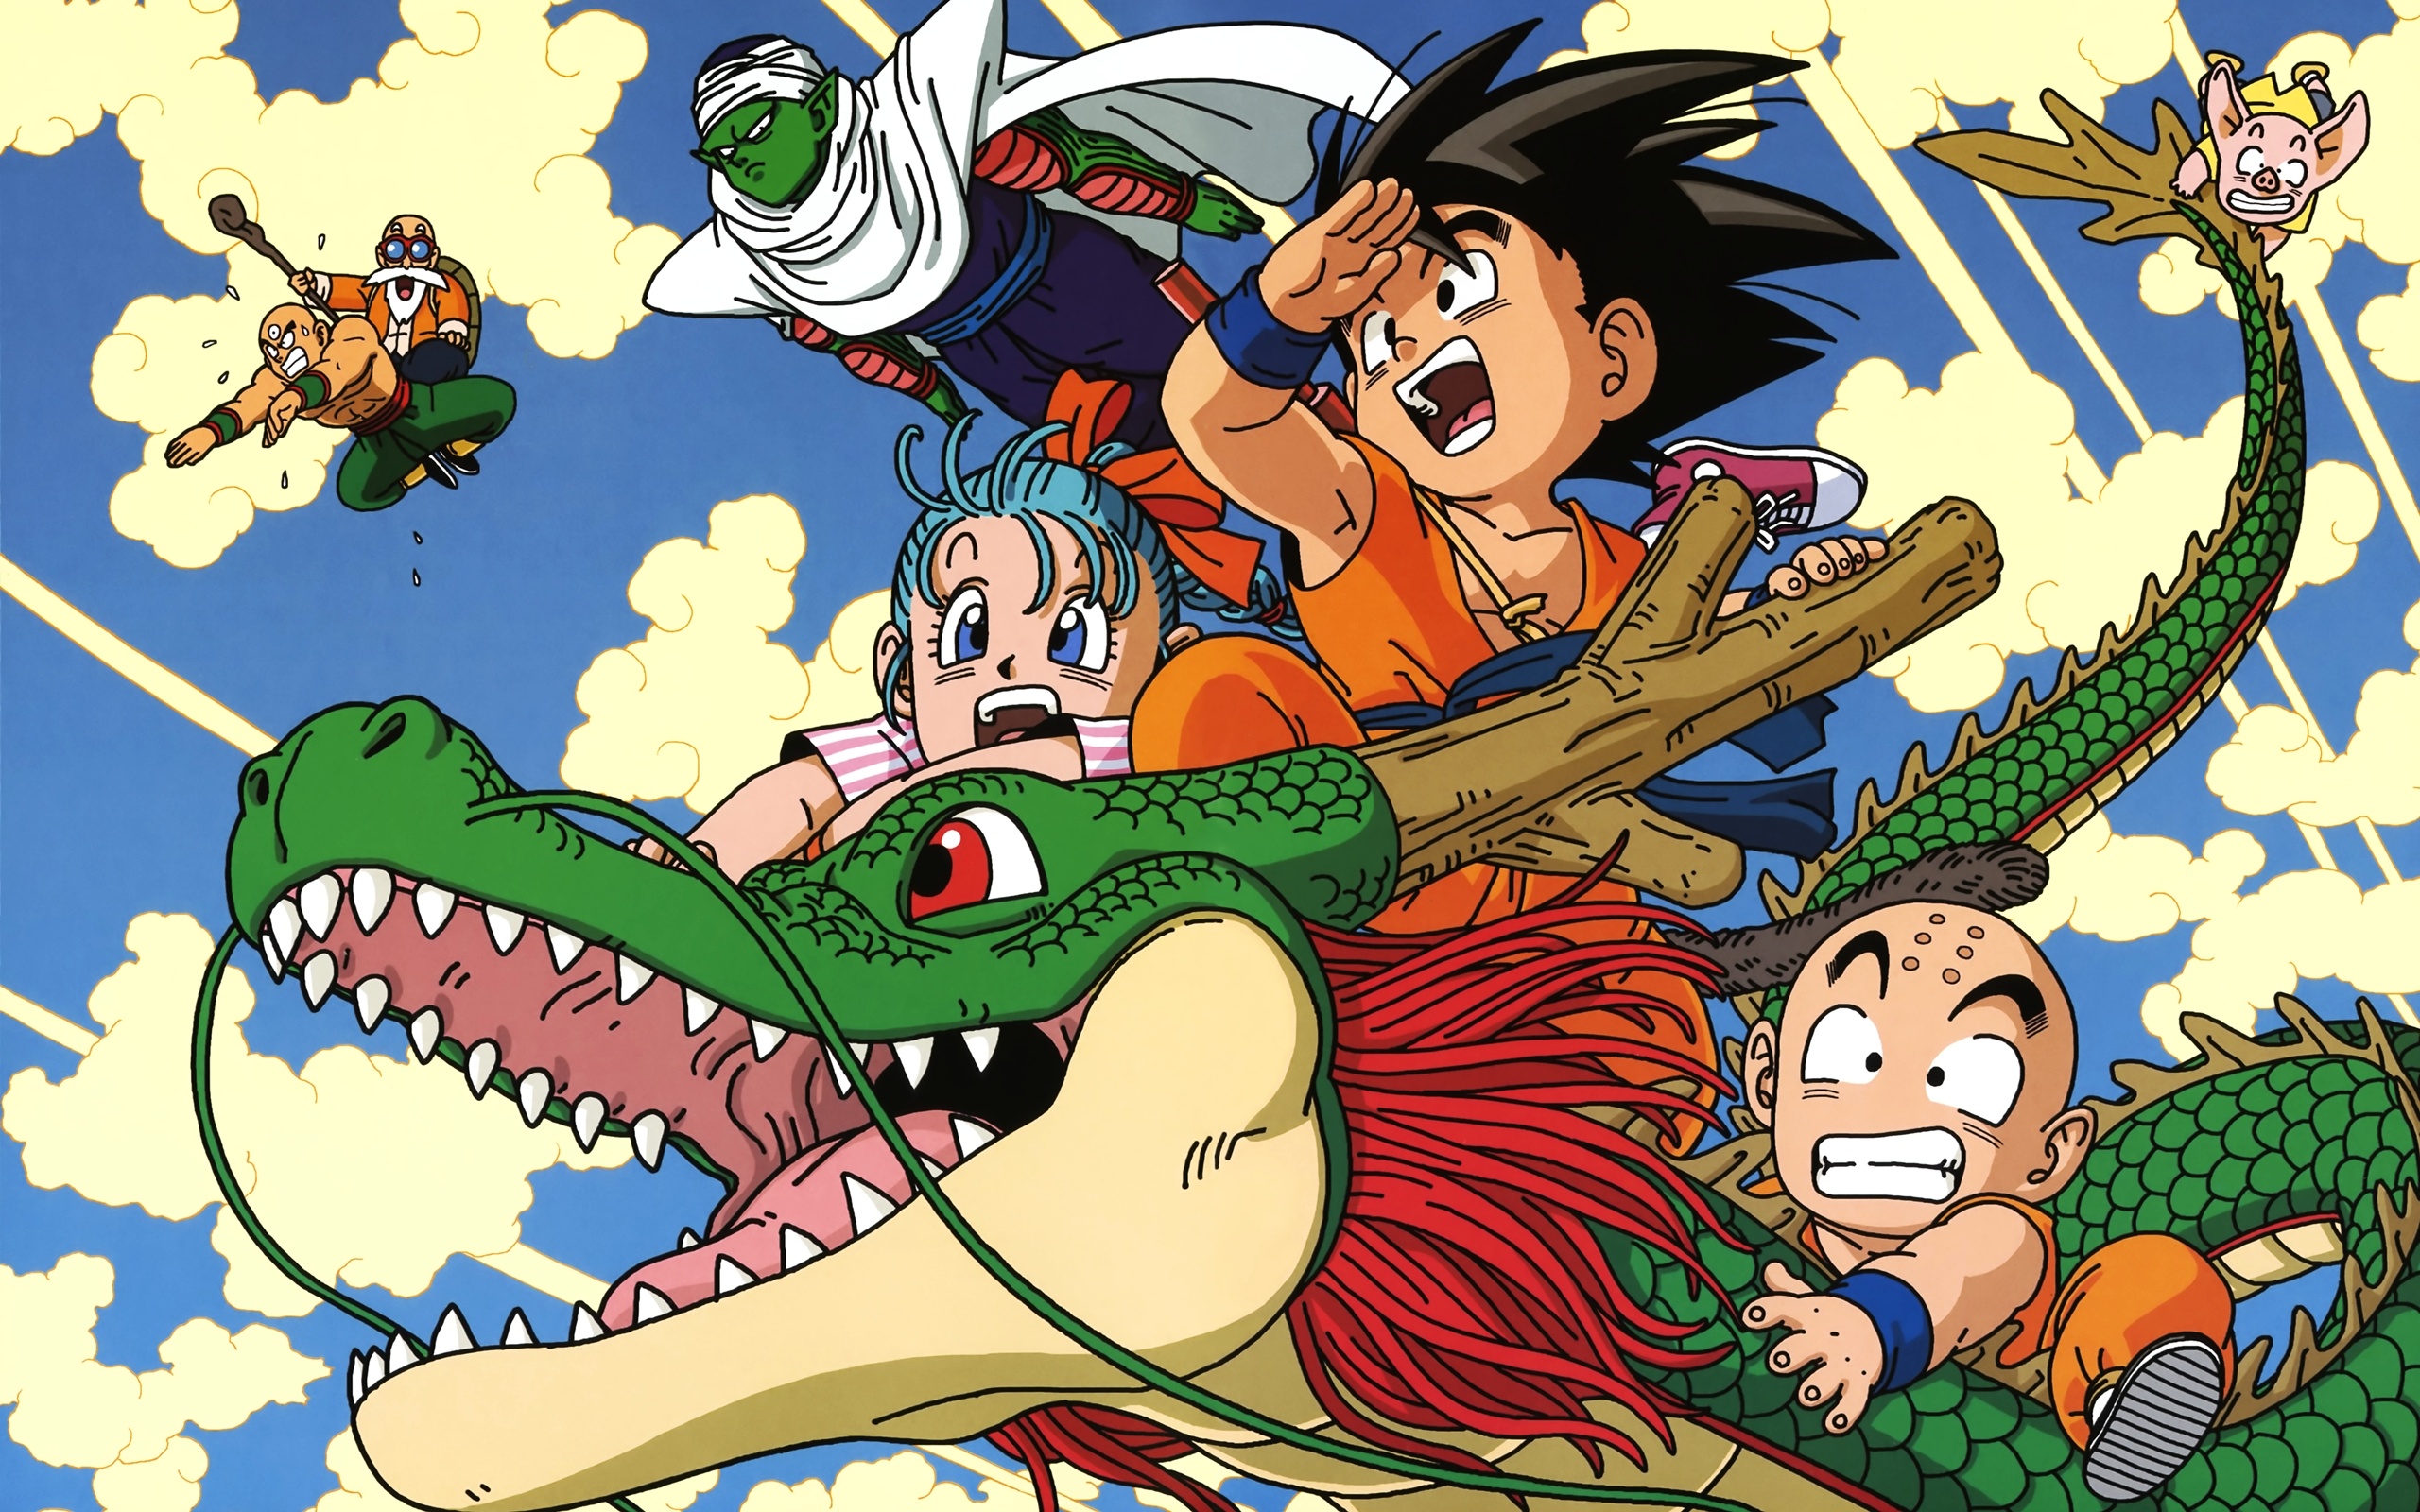 Dragon Ball Z Abridged, Dragon Ball wallpapers, Super Saiyan Goku, Anime battles, 2560x1600 HD Desktop